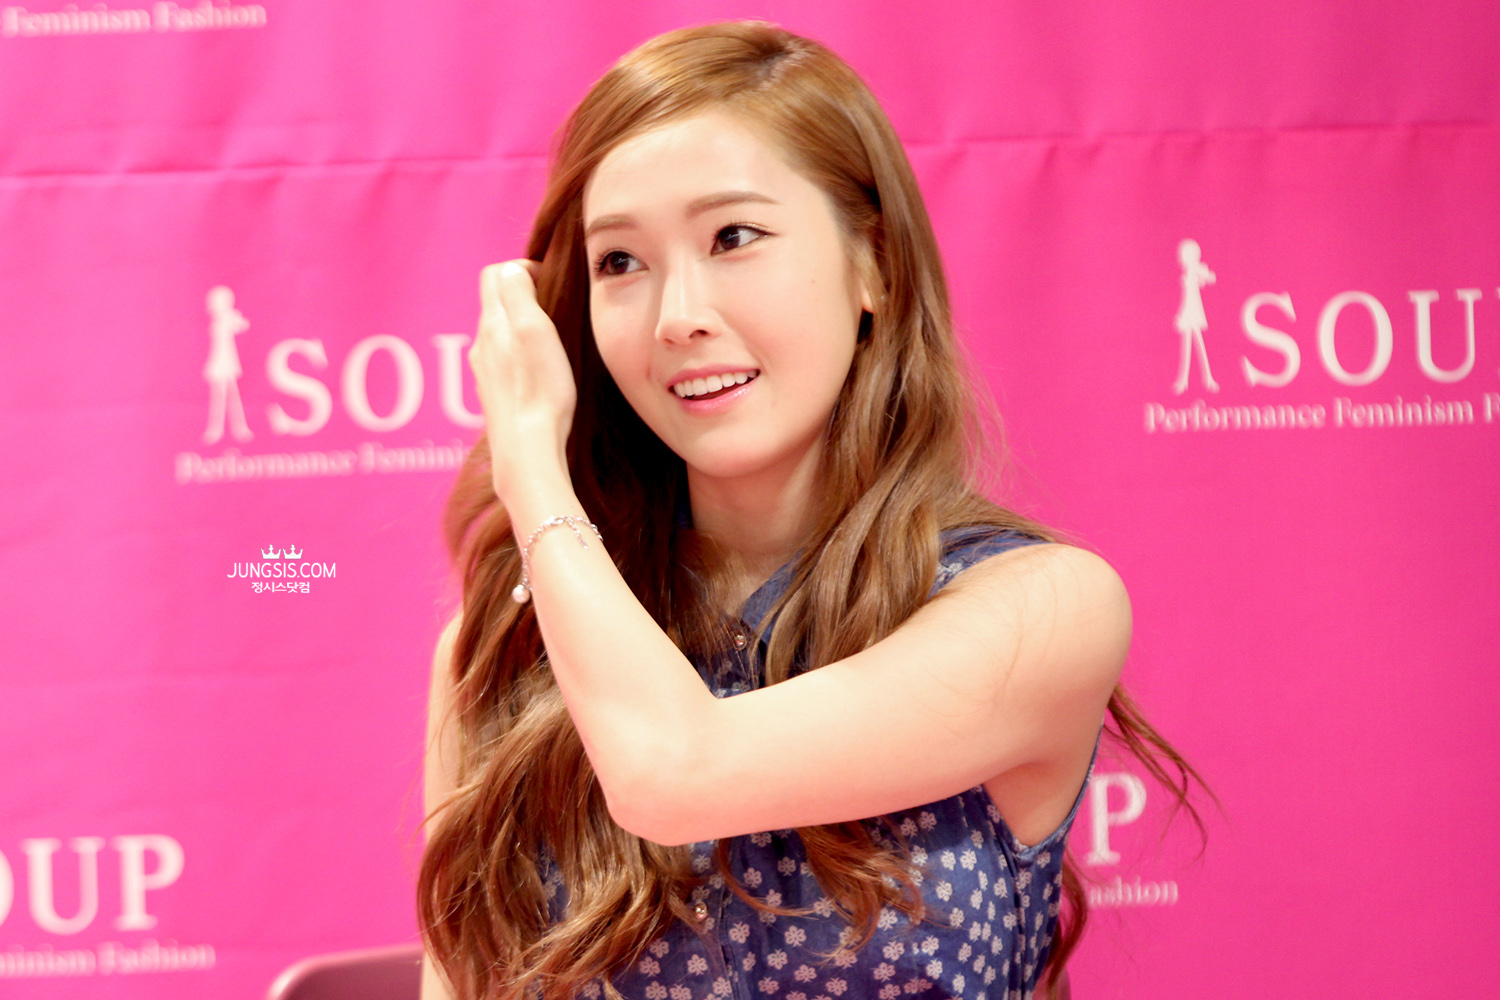 [PIC][04-04-2014]Jessica tham dự buổi fansign cho thương hiệu "SOUP" vào trưa nay - Page 3 270D264353A4485F129D0C